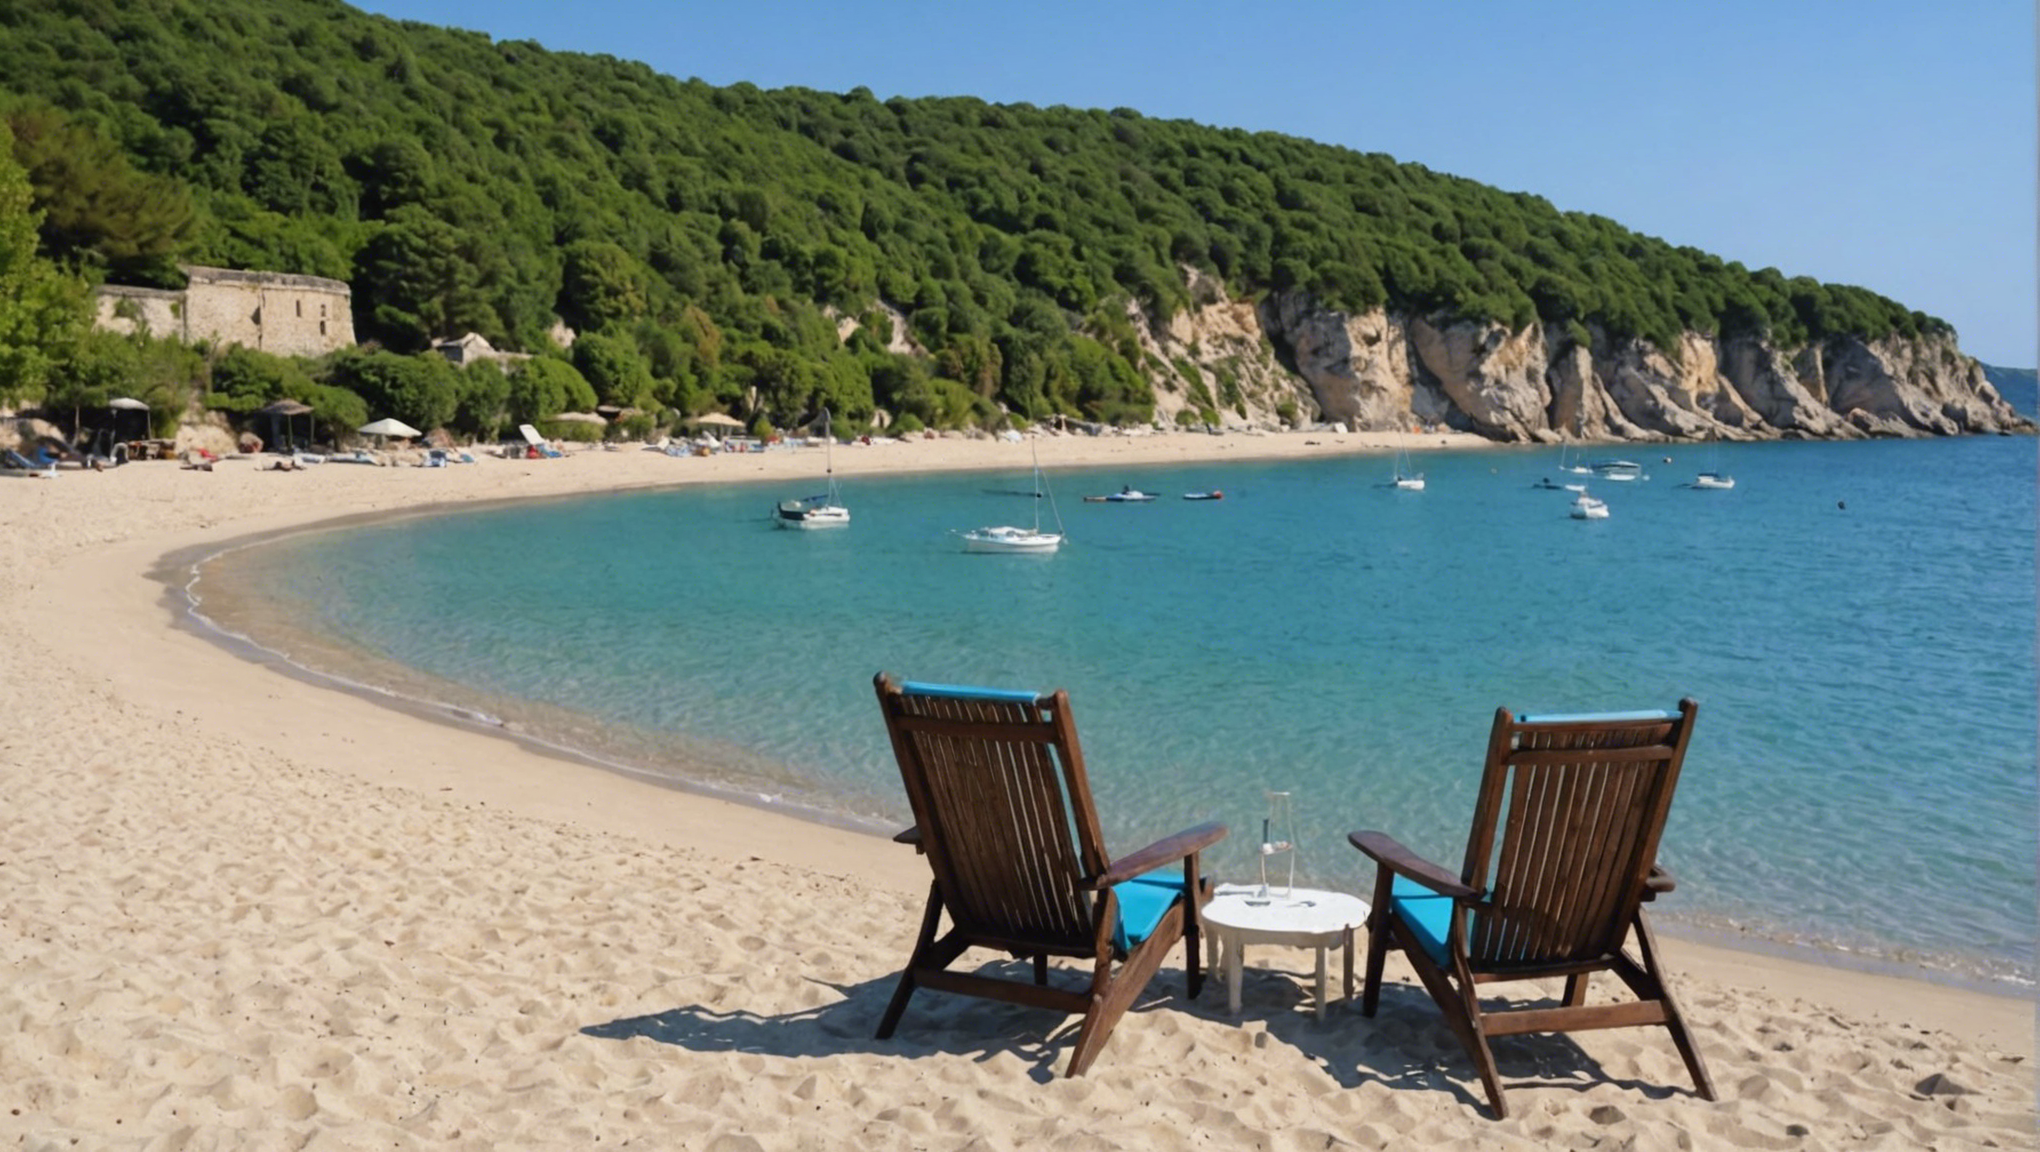 détendez-vous en découvrant la magnifique plage privée de saint-cyr, un havre de paix pour des moments de pure relaxation.